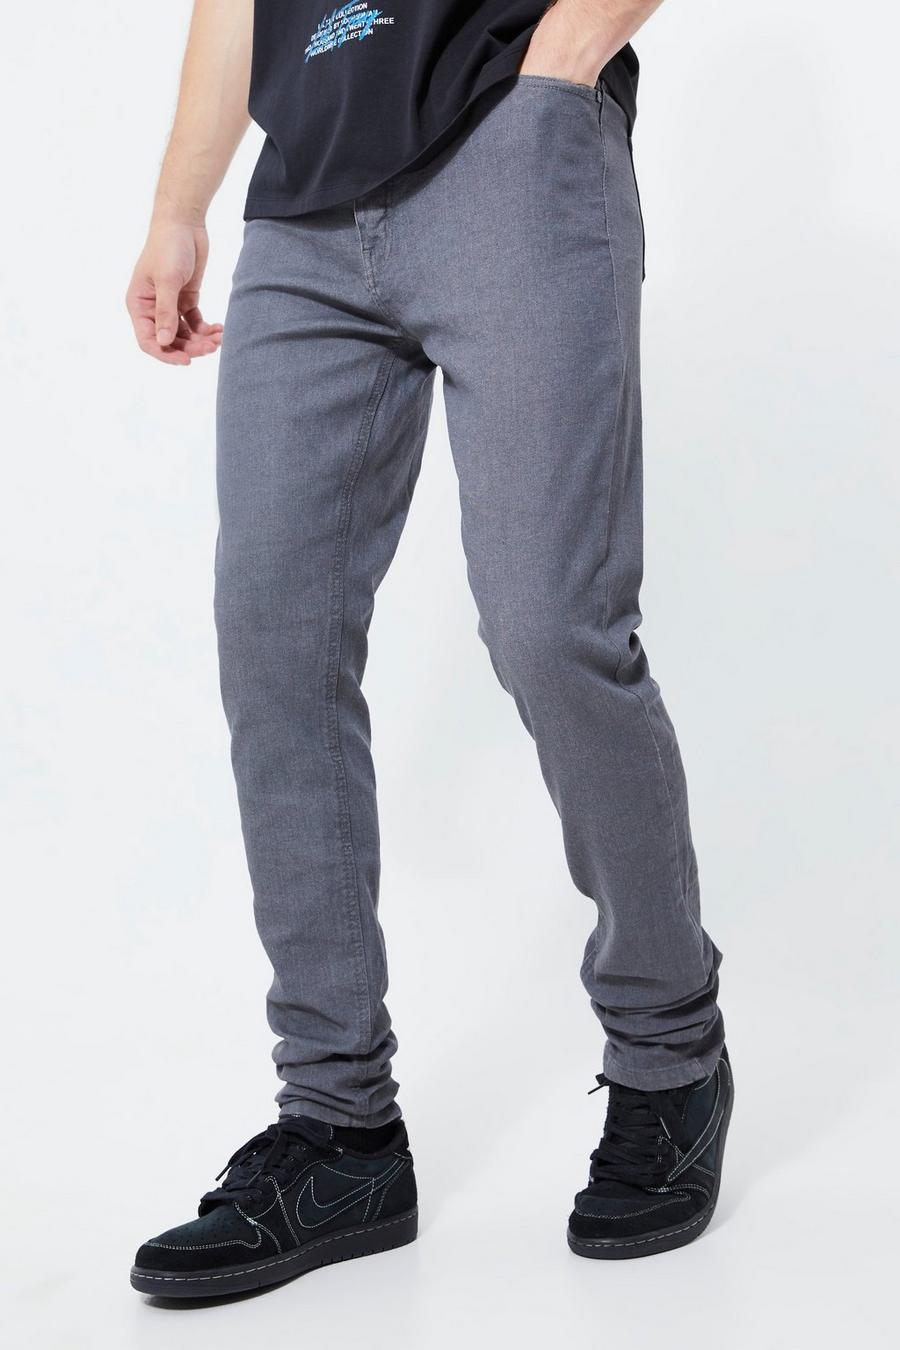 Jeans Tall Skinny Fit rivestiti con inserti, zip e pieghe sul fondo, Grey grigio